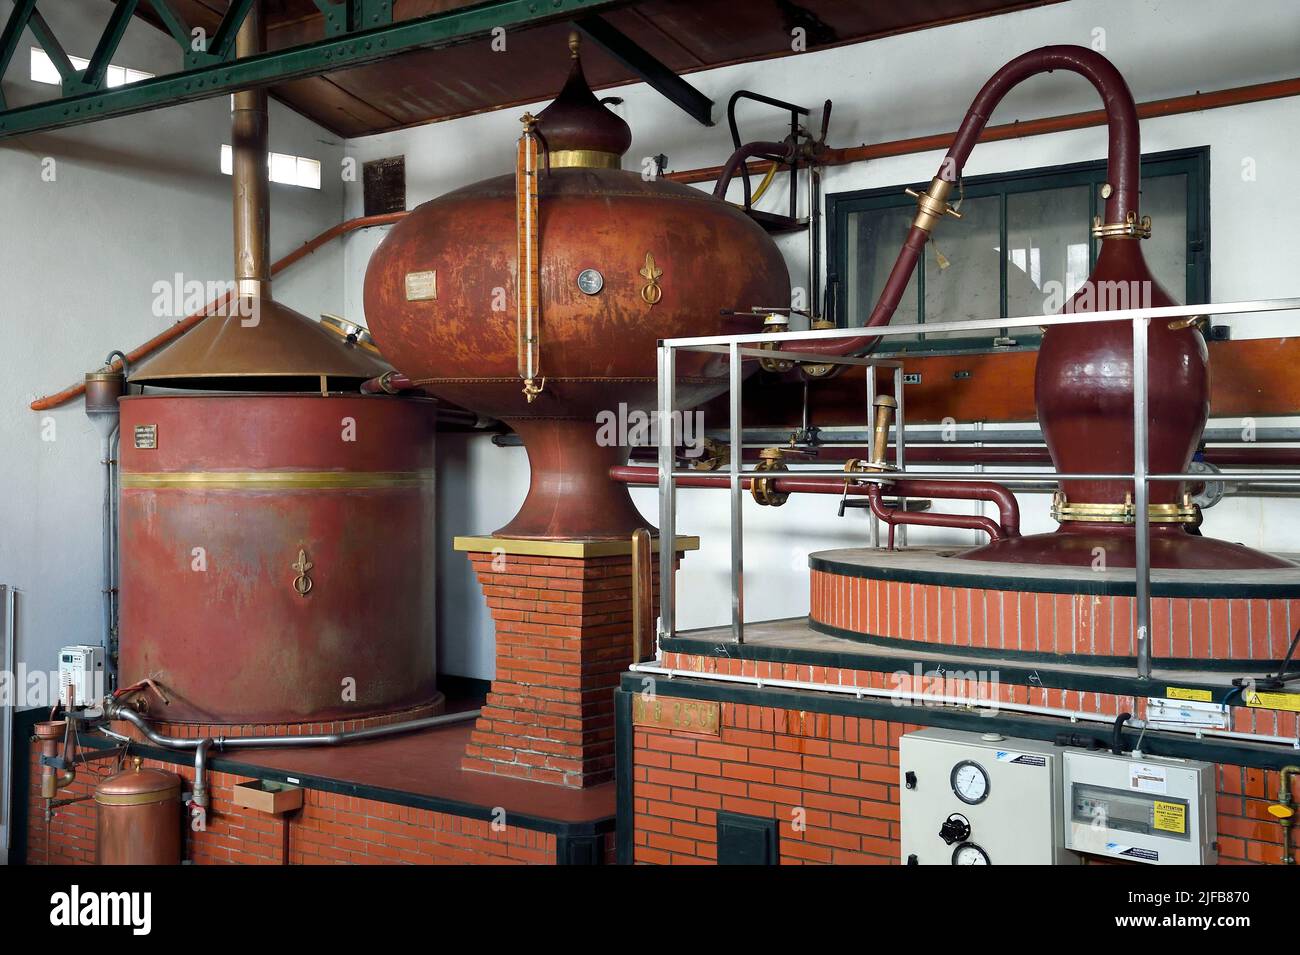 France, Charente, Sireuil, distillerie des Moisans, Charentais toujours destiné à produire de l'eau-de-vie qui deviendra cognac Banque D'Images